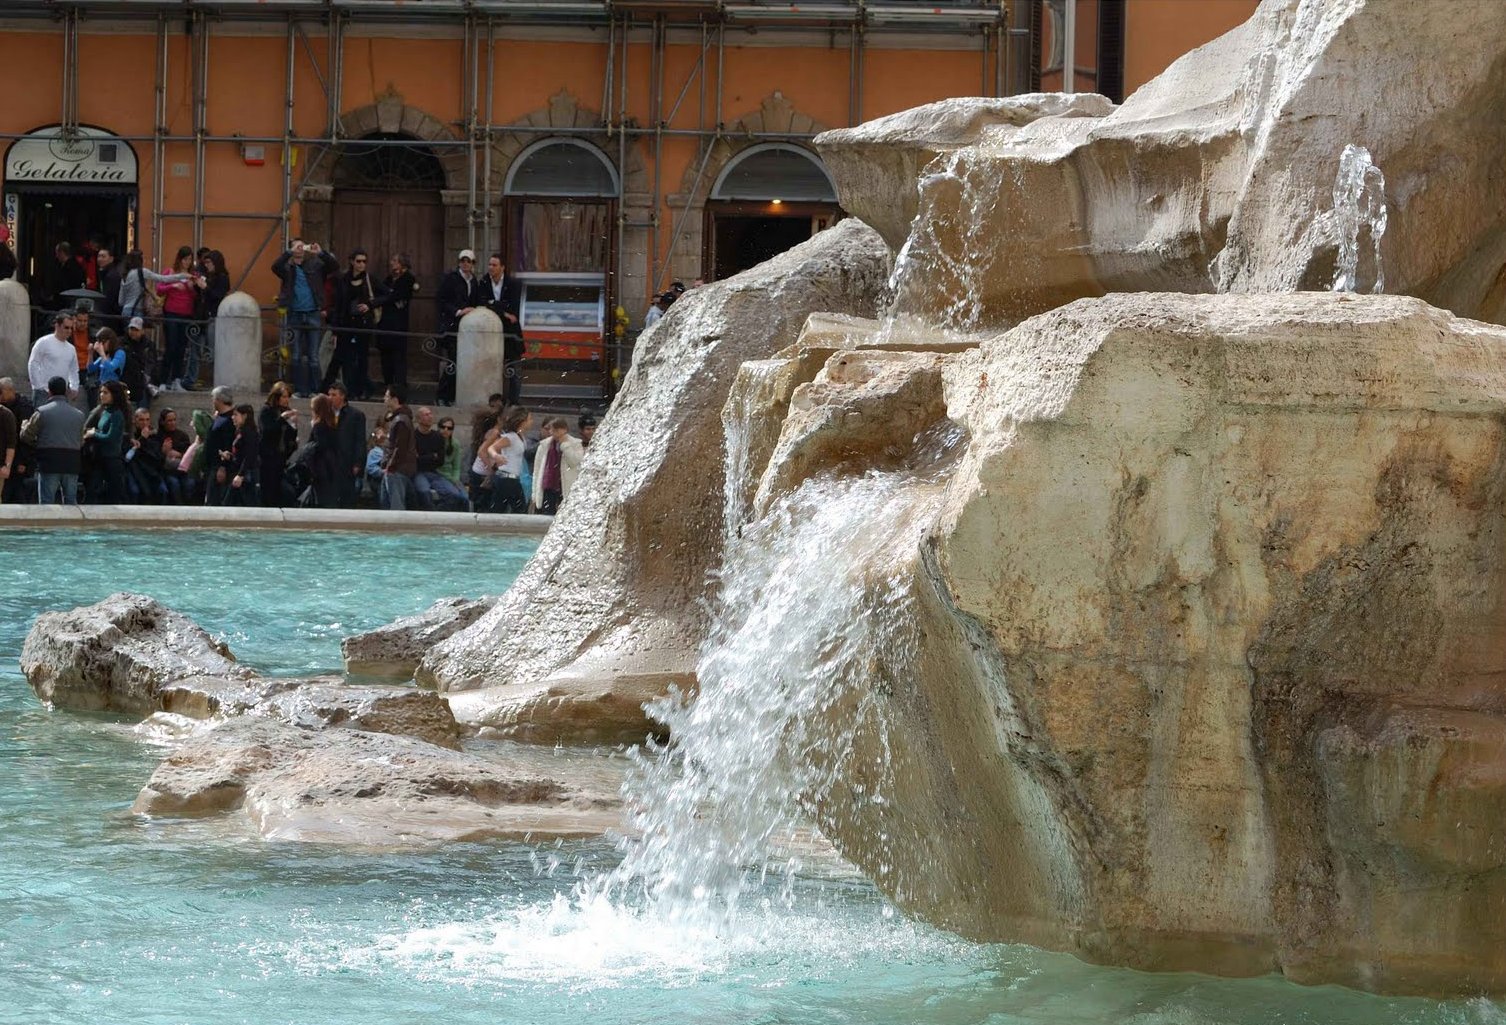 La Fontana di Trevi 1732-1762 | Roma Barocca e Rococò